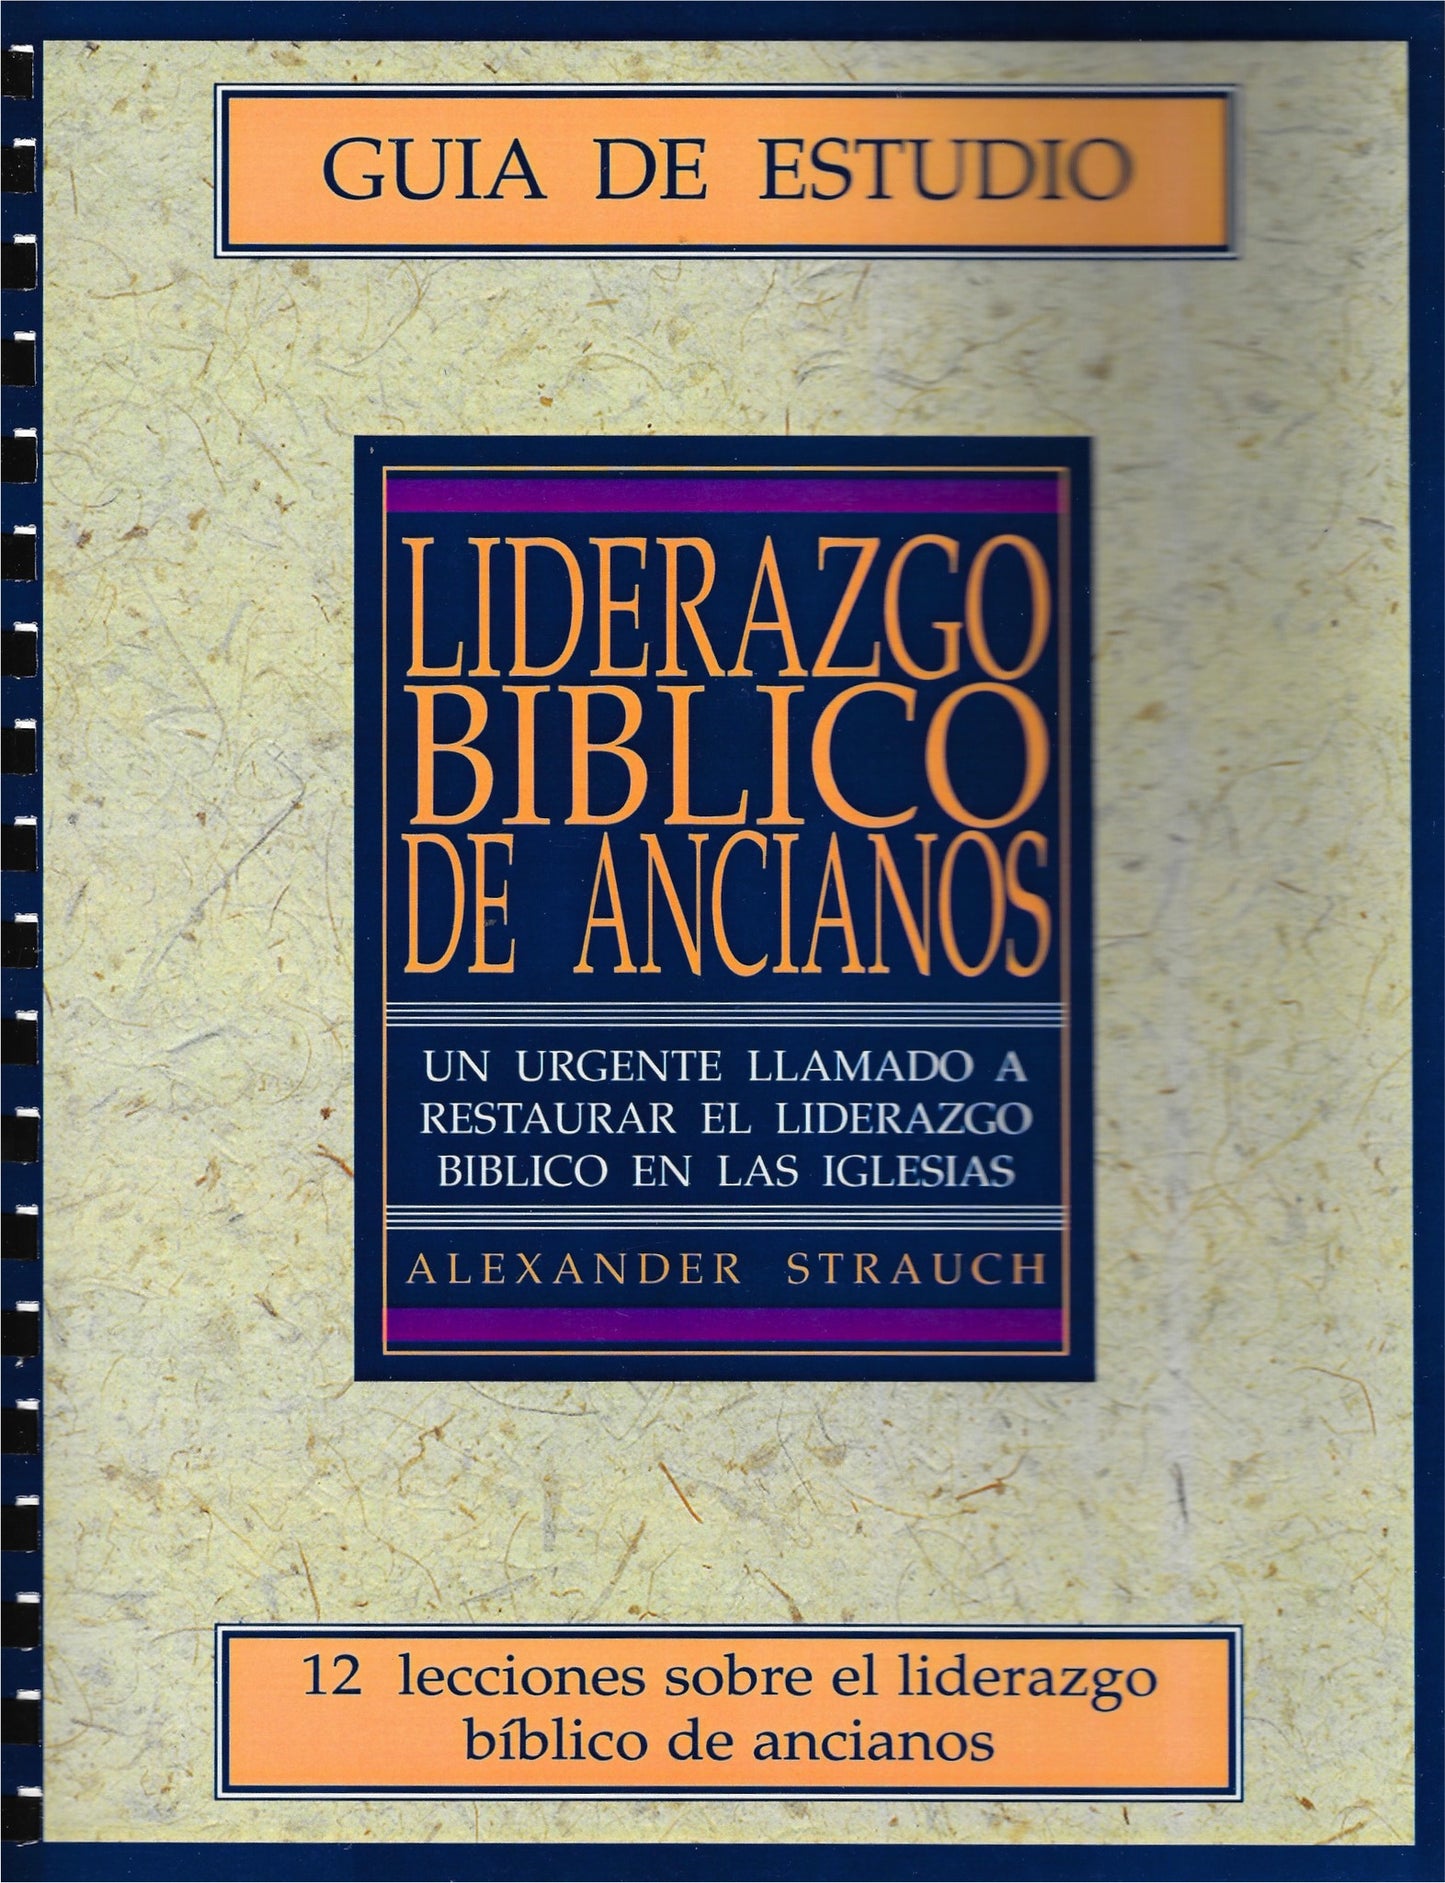 Liderazgo bíblico: guía de estudio por Alexander Strauch (Biblical Eldership Study Guide)